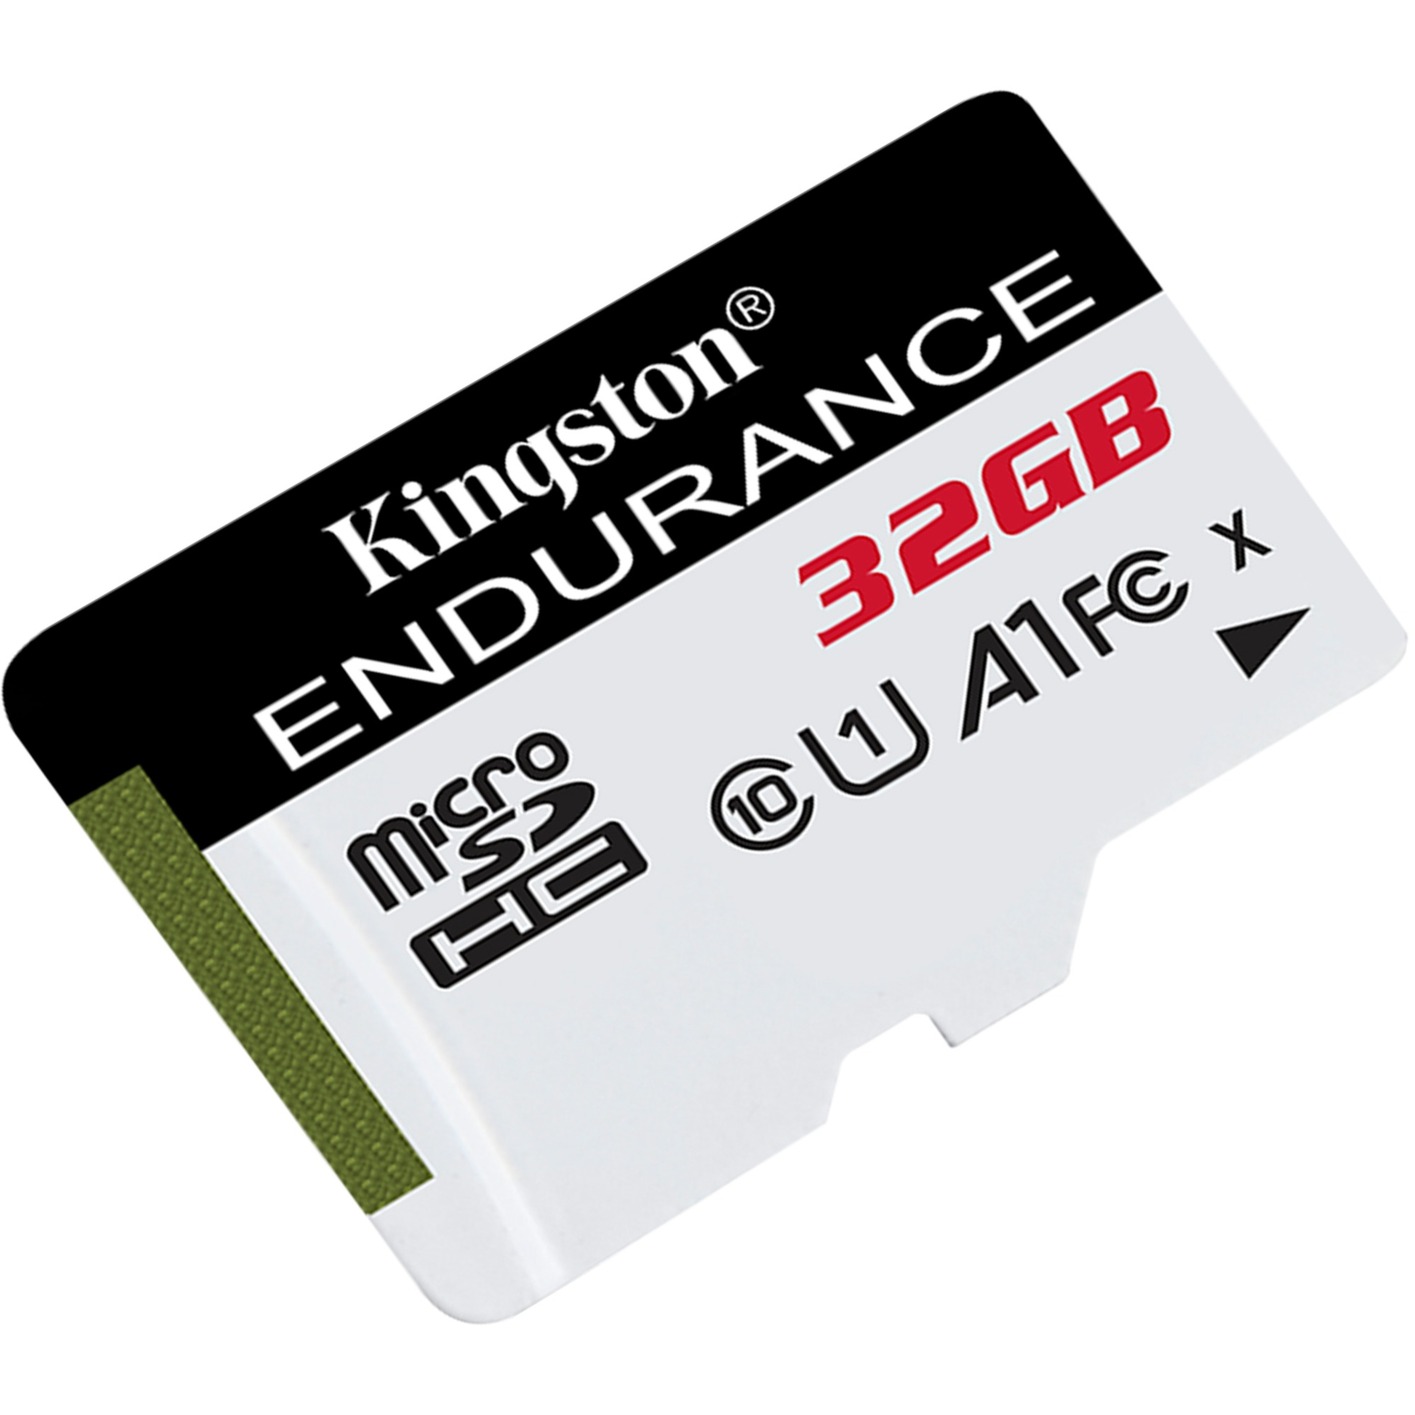 Image of Alternate - High Endurance 32 GB microSDHC, Speicherkarte online einkaufen bei Alternate